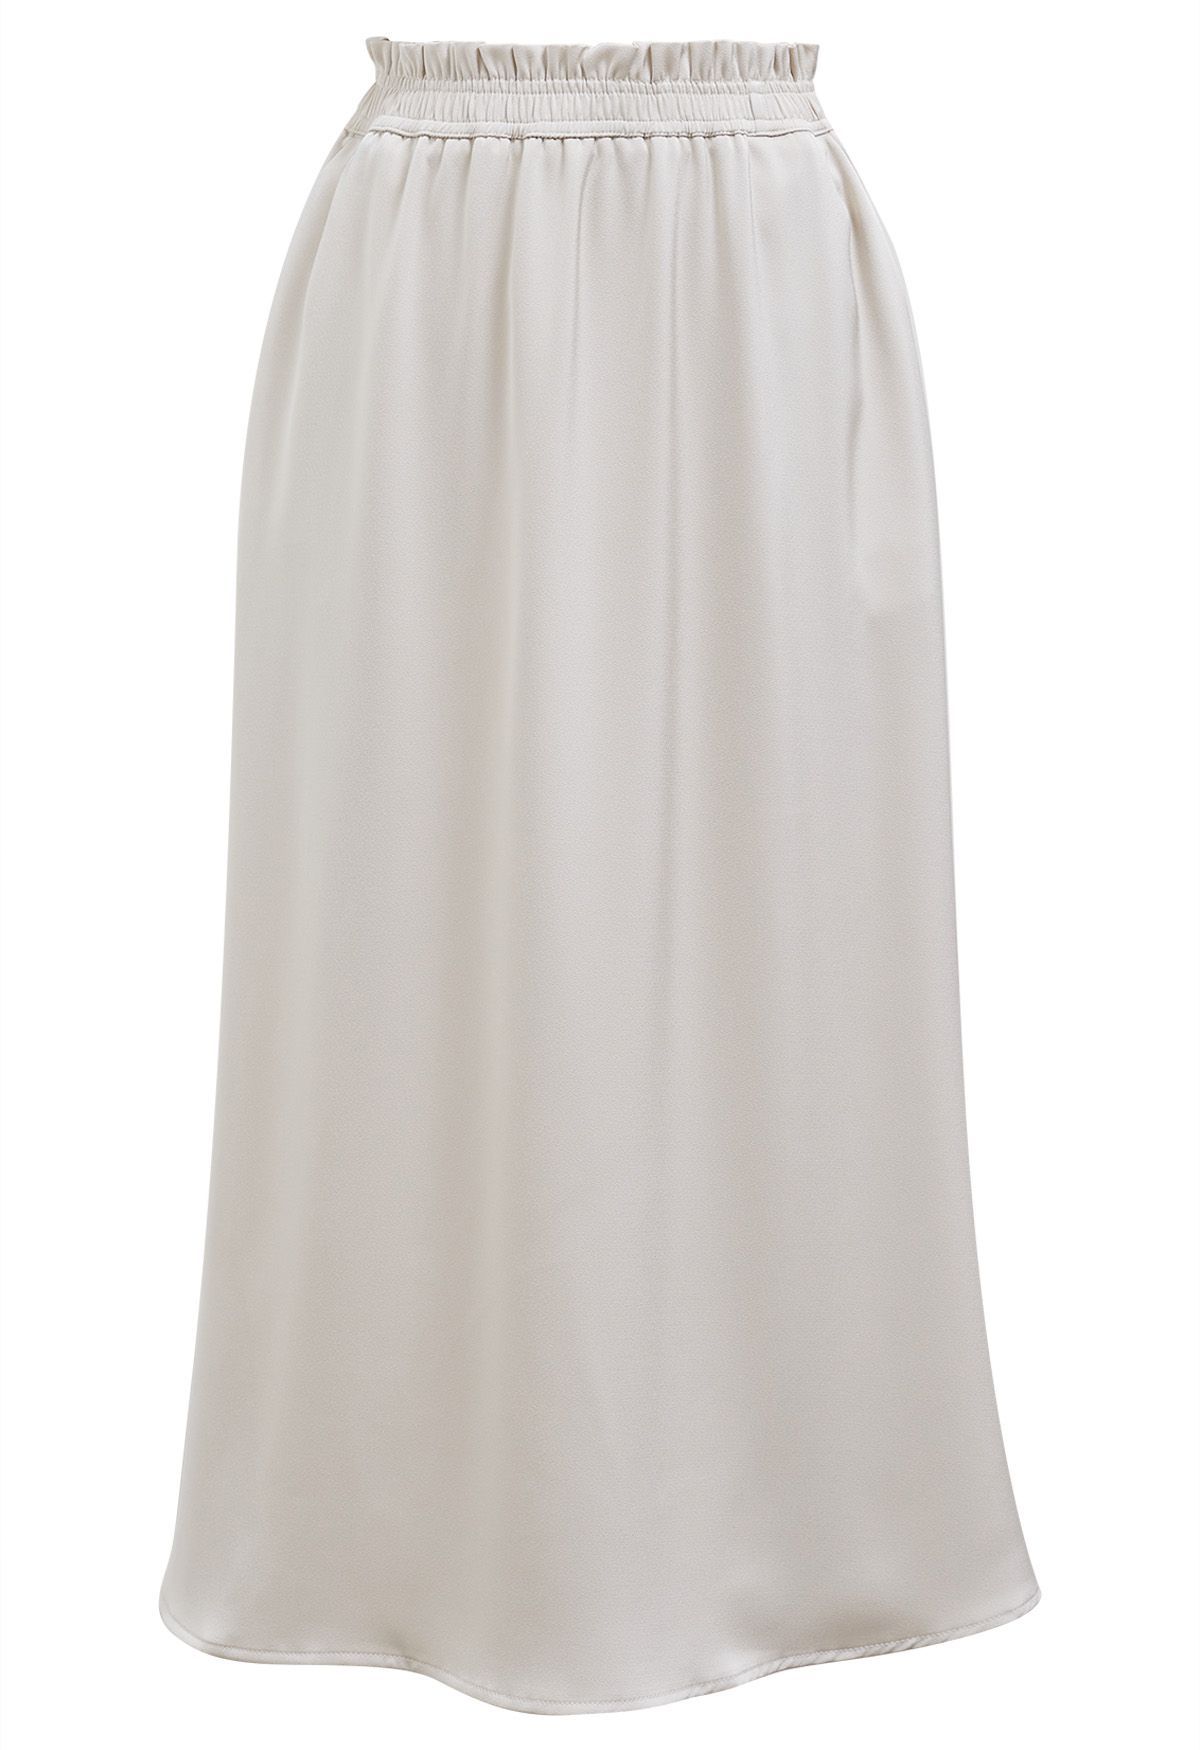 Satin High Waist Midi Skirt in Ivory | Chicwish